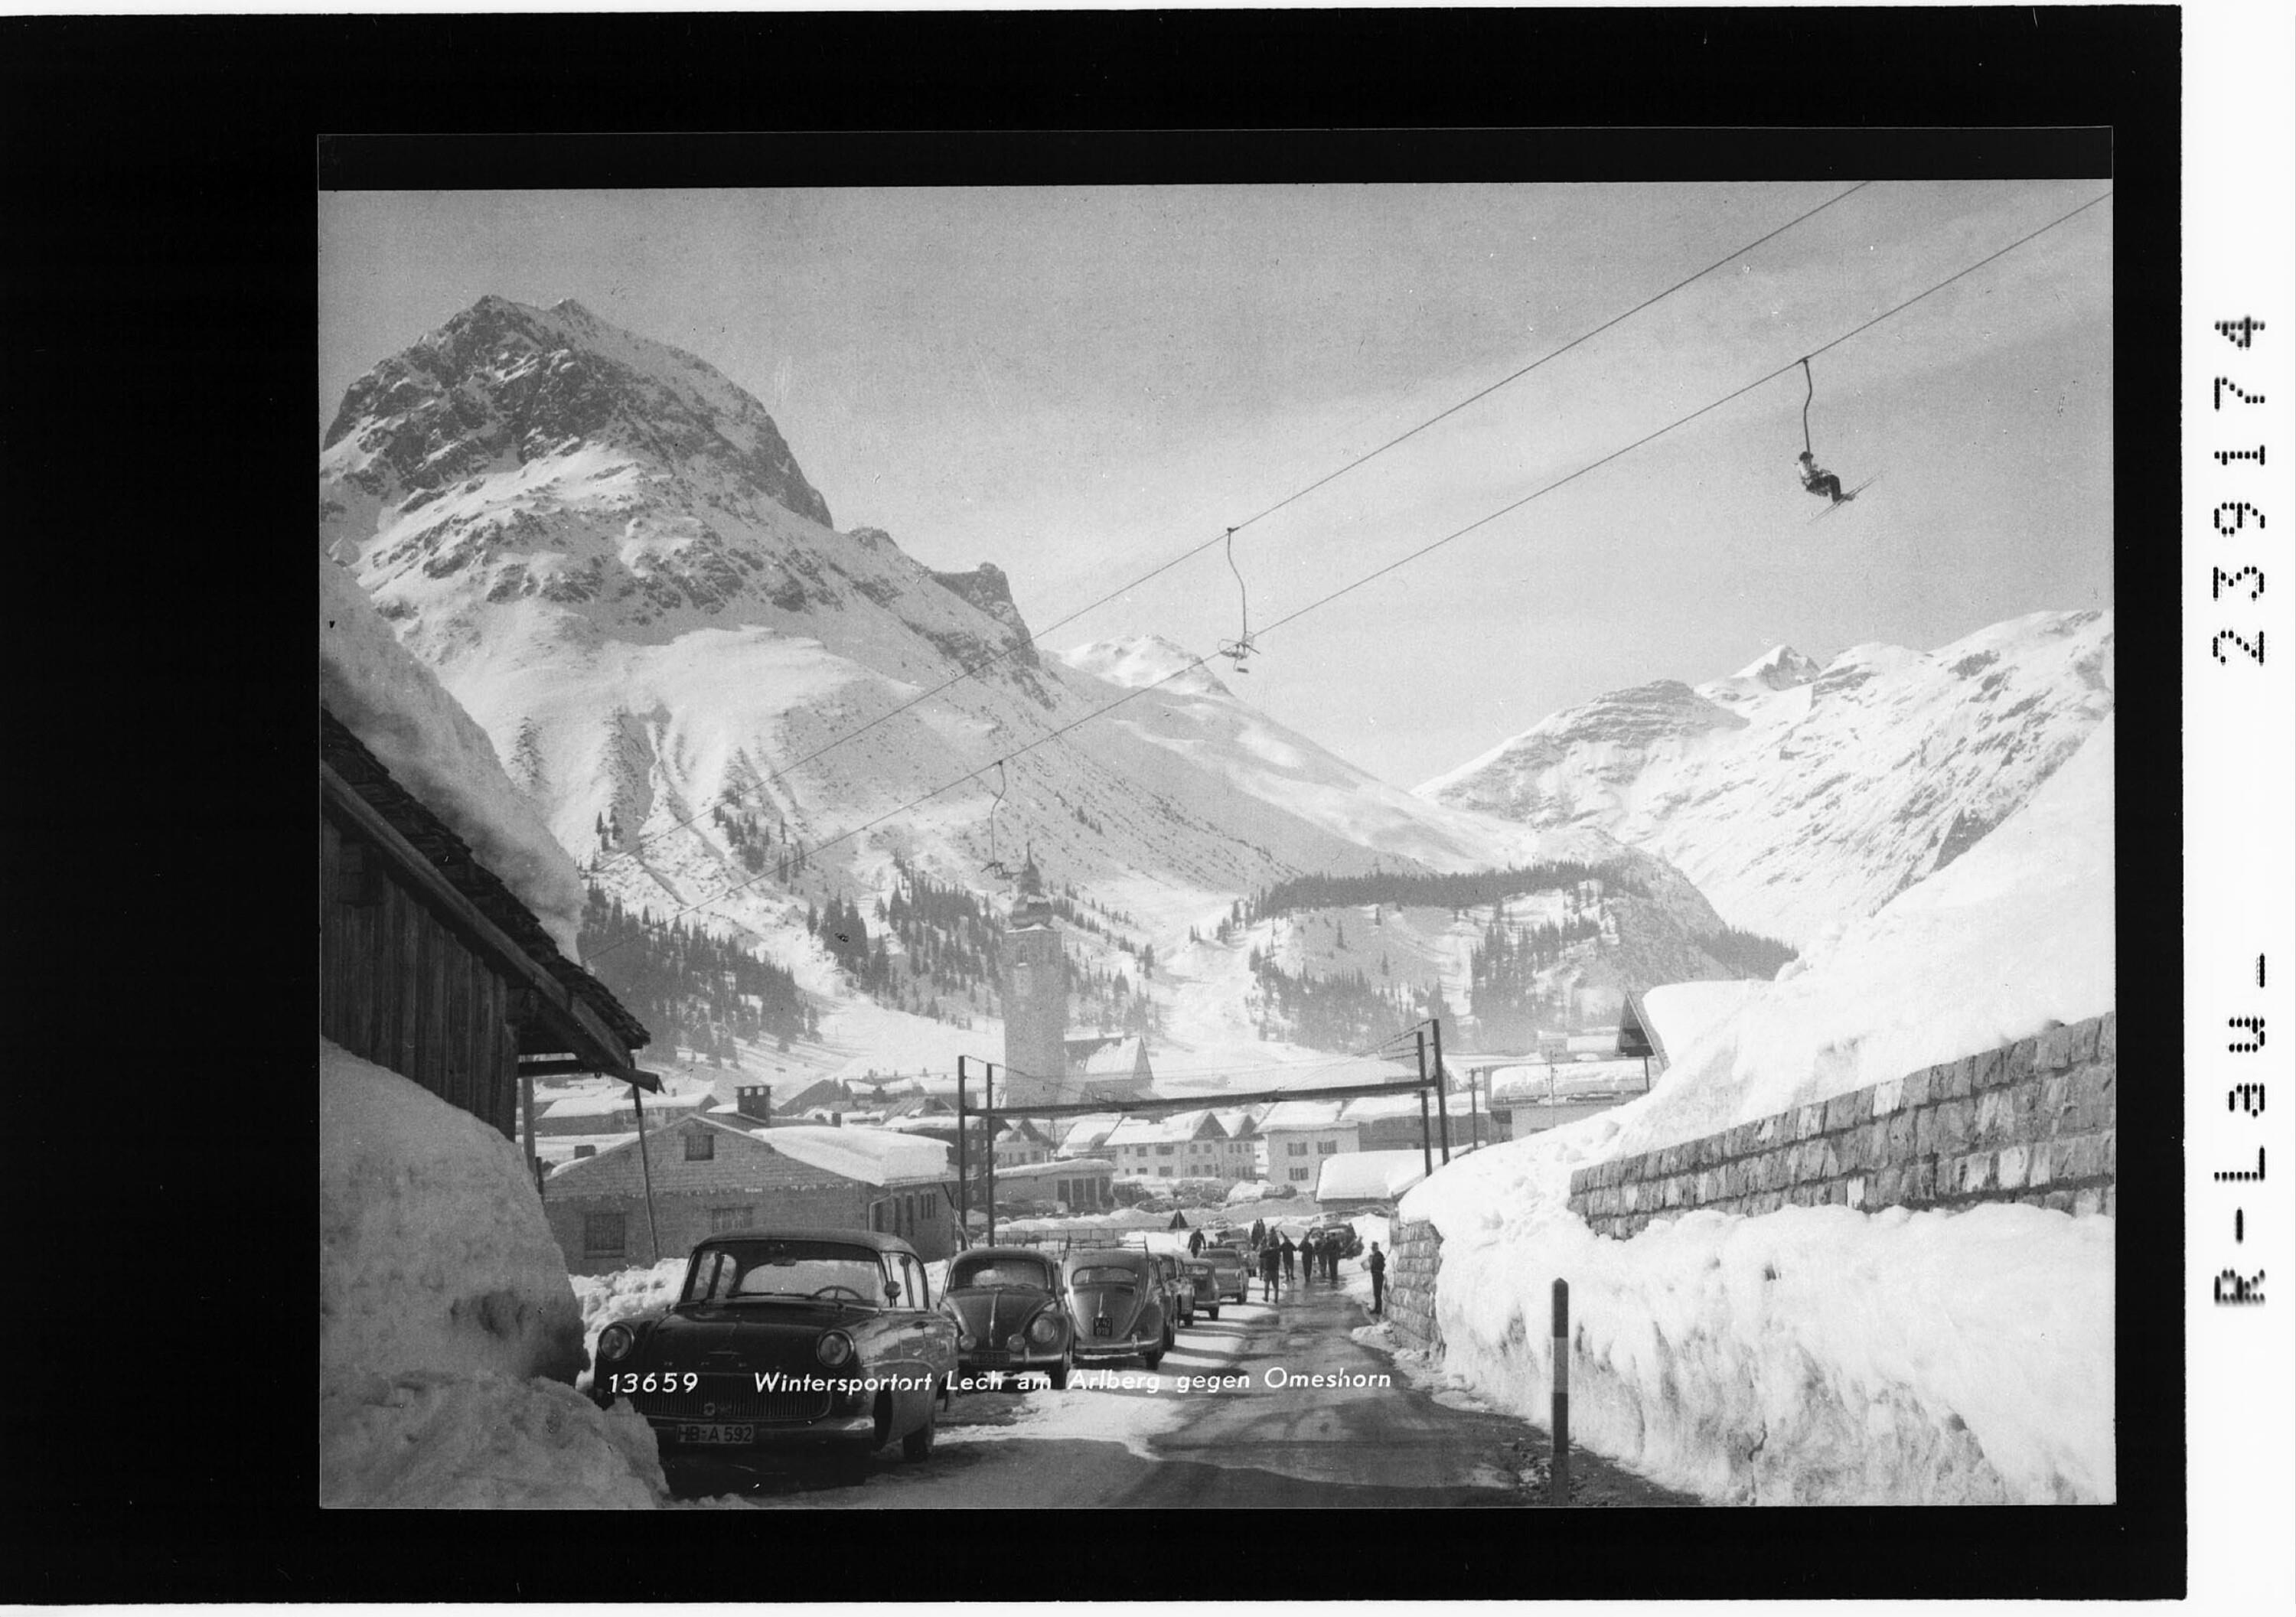 Wintersportort Lech am Arlberg gegen Omeshorn></div>


    <hr>
    <div class=